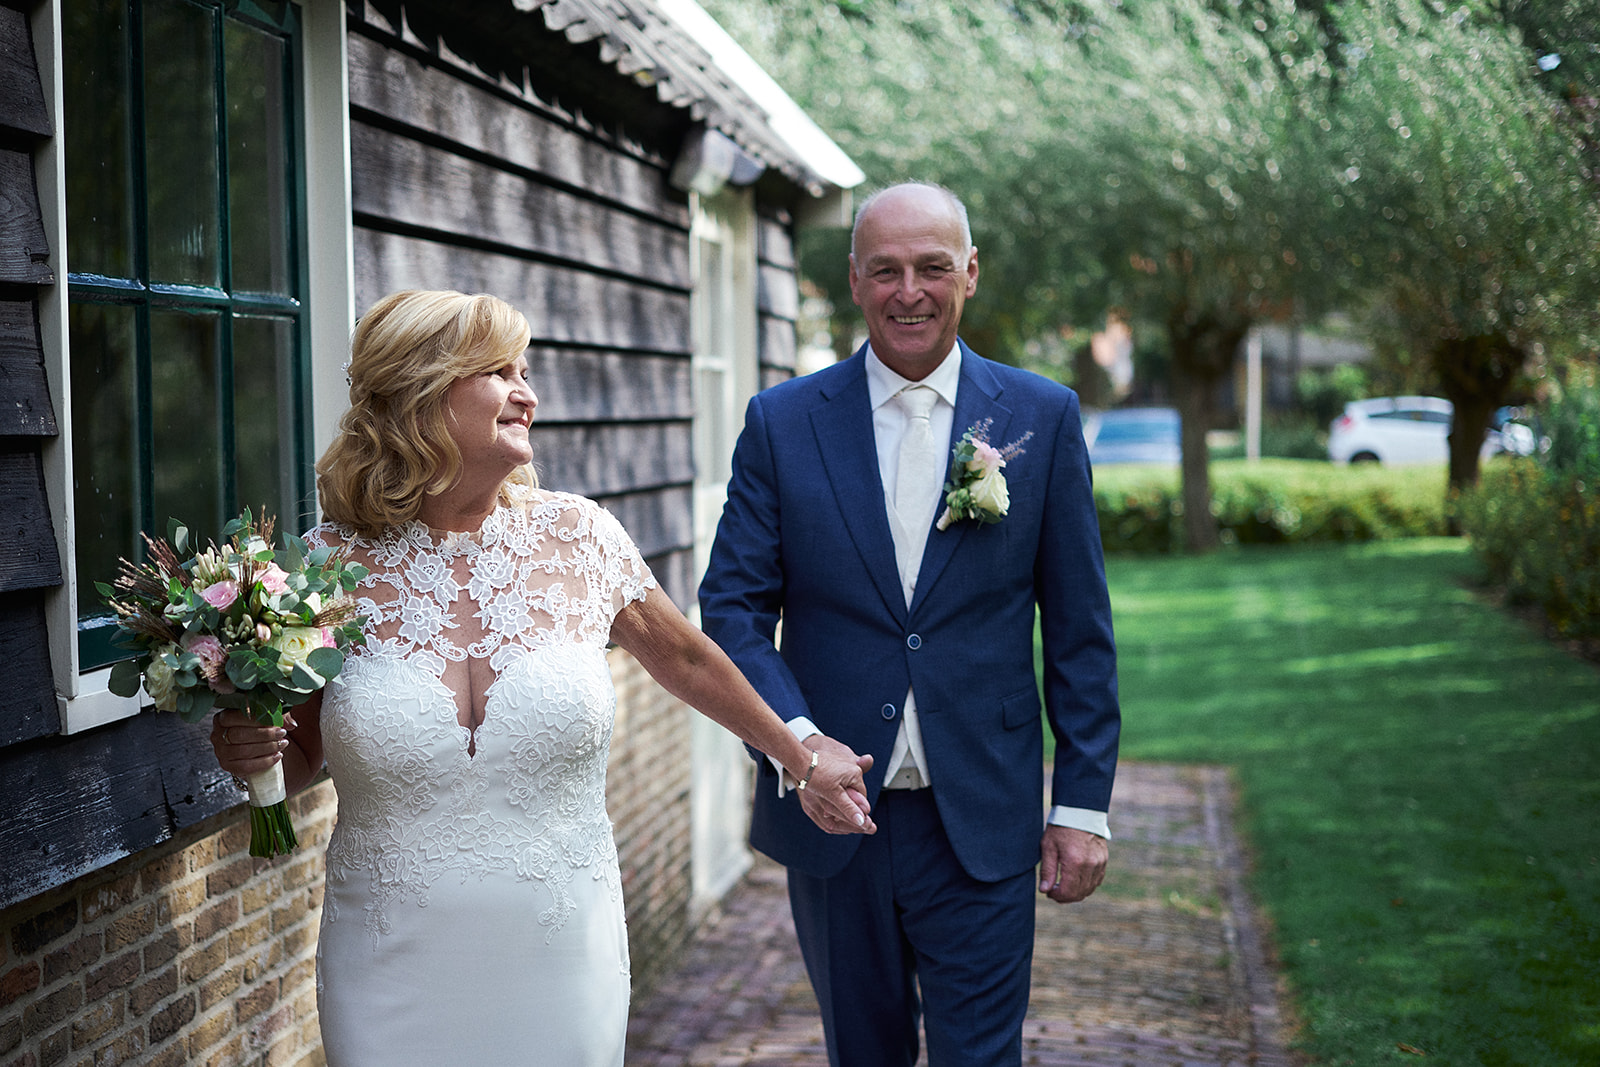 Bruidsfotografie bij 't Hof van Hoenkoop: het romantische huwelijk van Jopie en Kees, vastgelegd door Stefan Segers